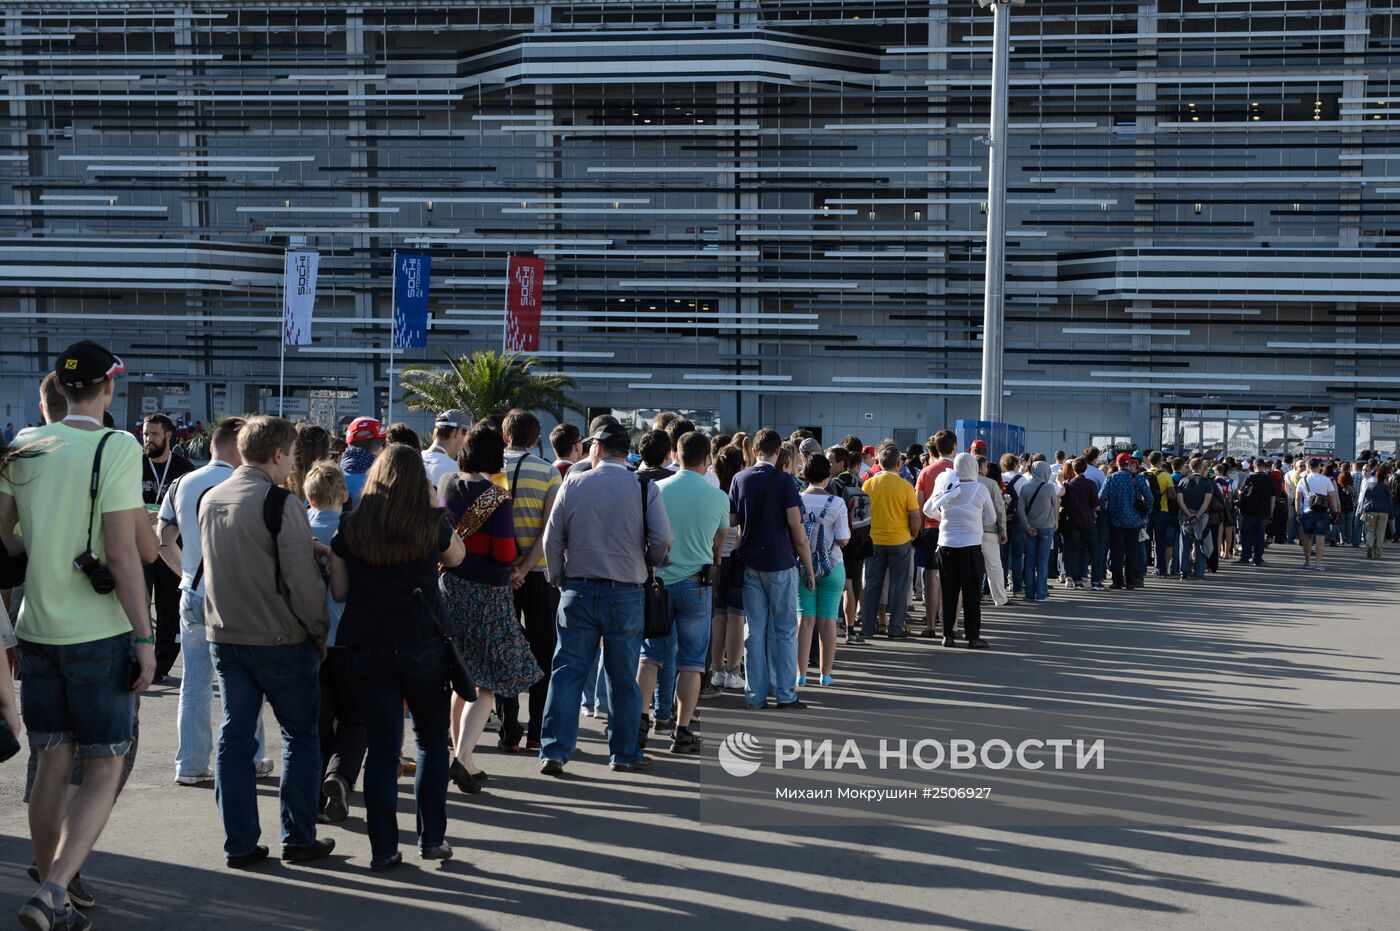 Подготовка к российскому этапу чемпионата мира по кольцевым автогонкам в классе "Формула-1"